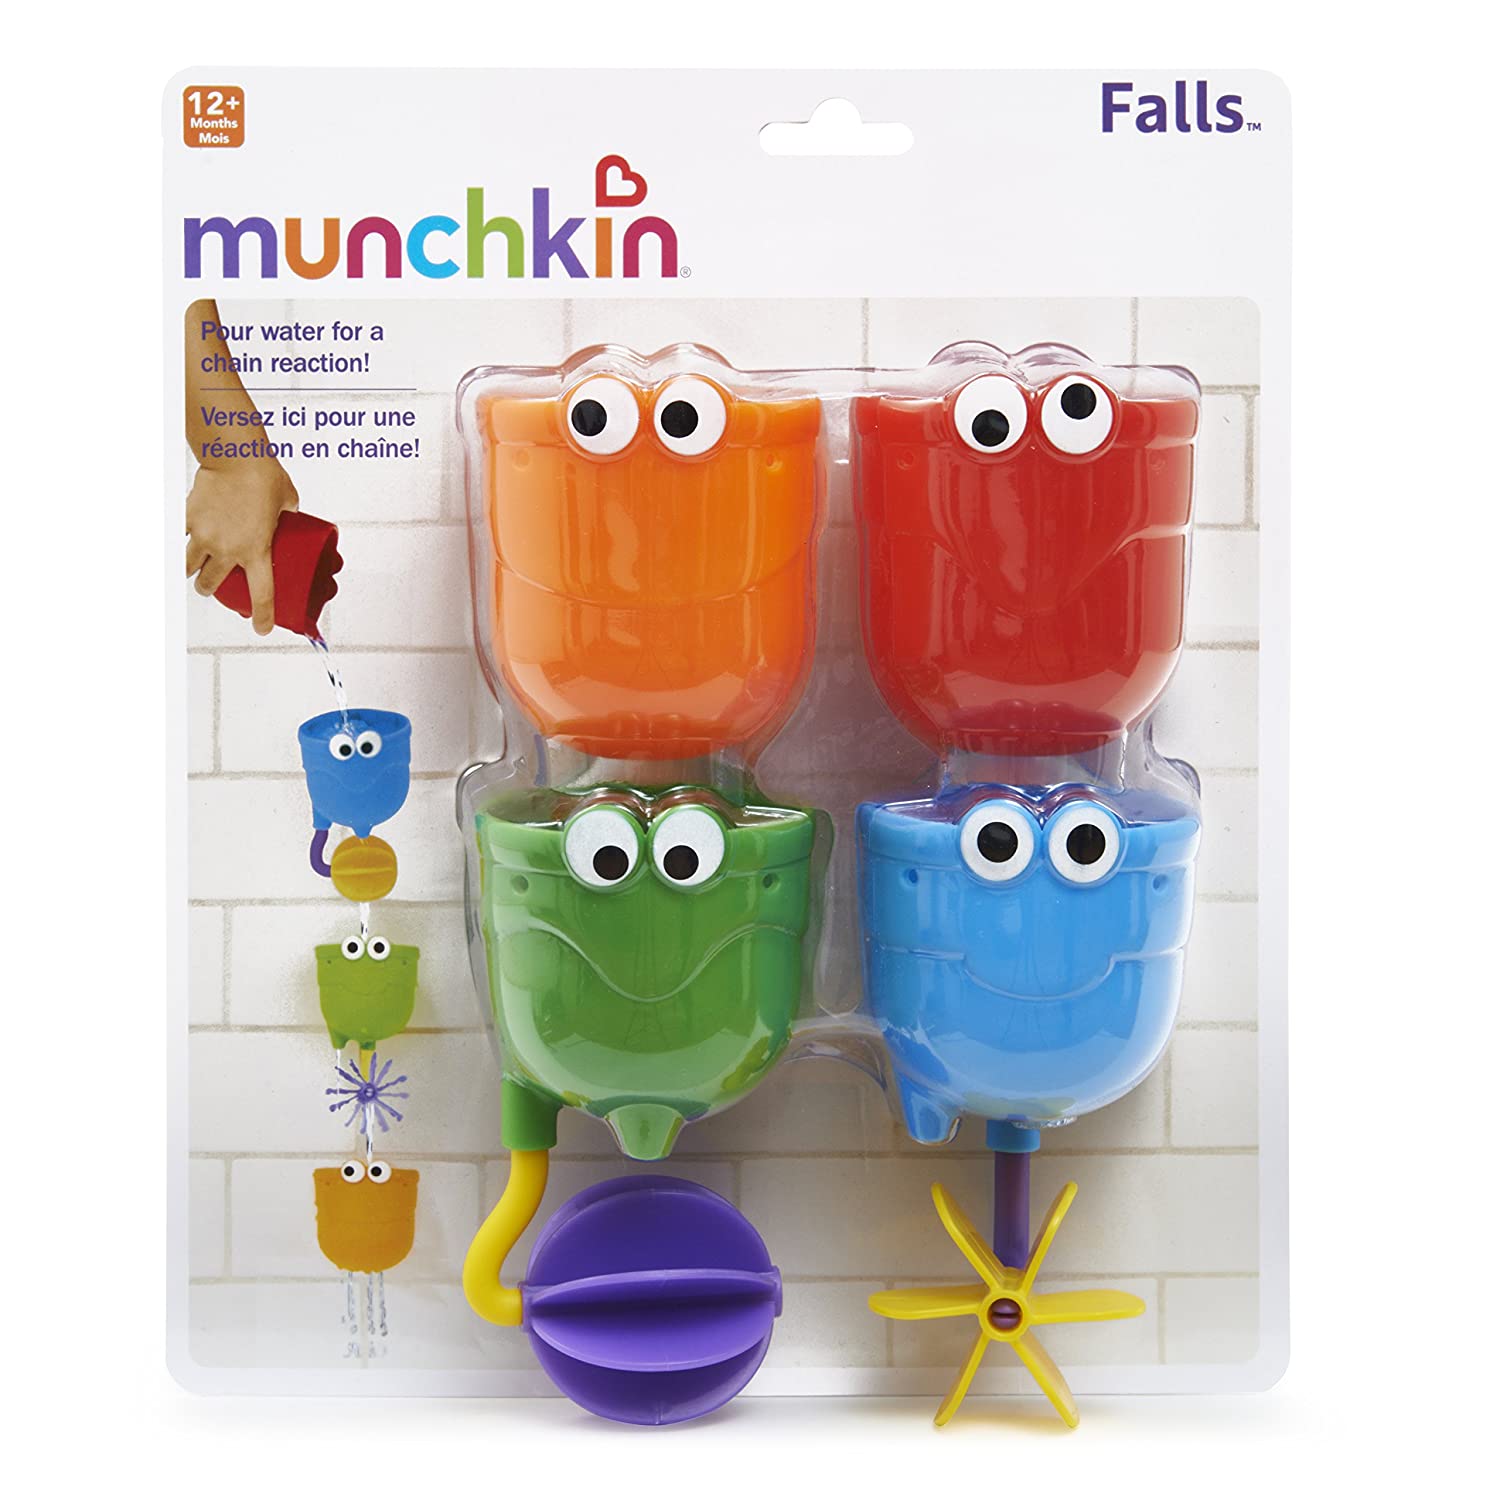 munchkin falls bath toy 4